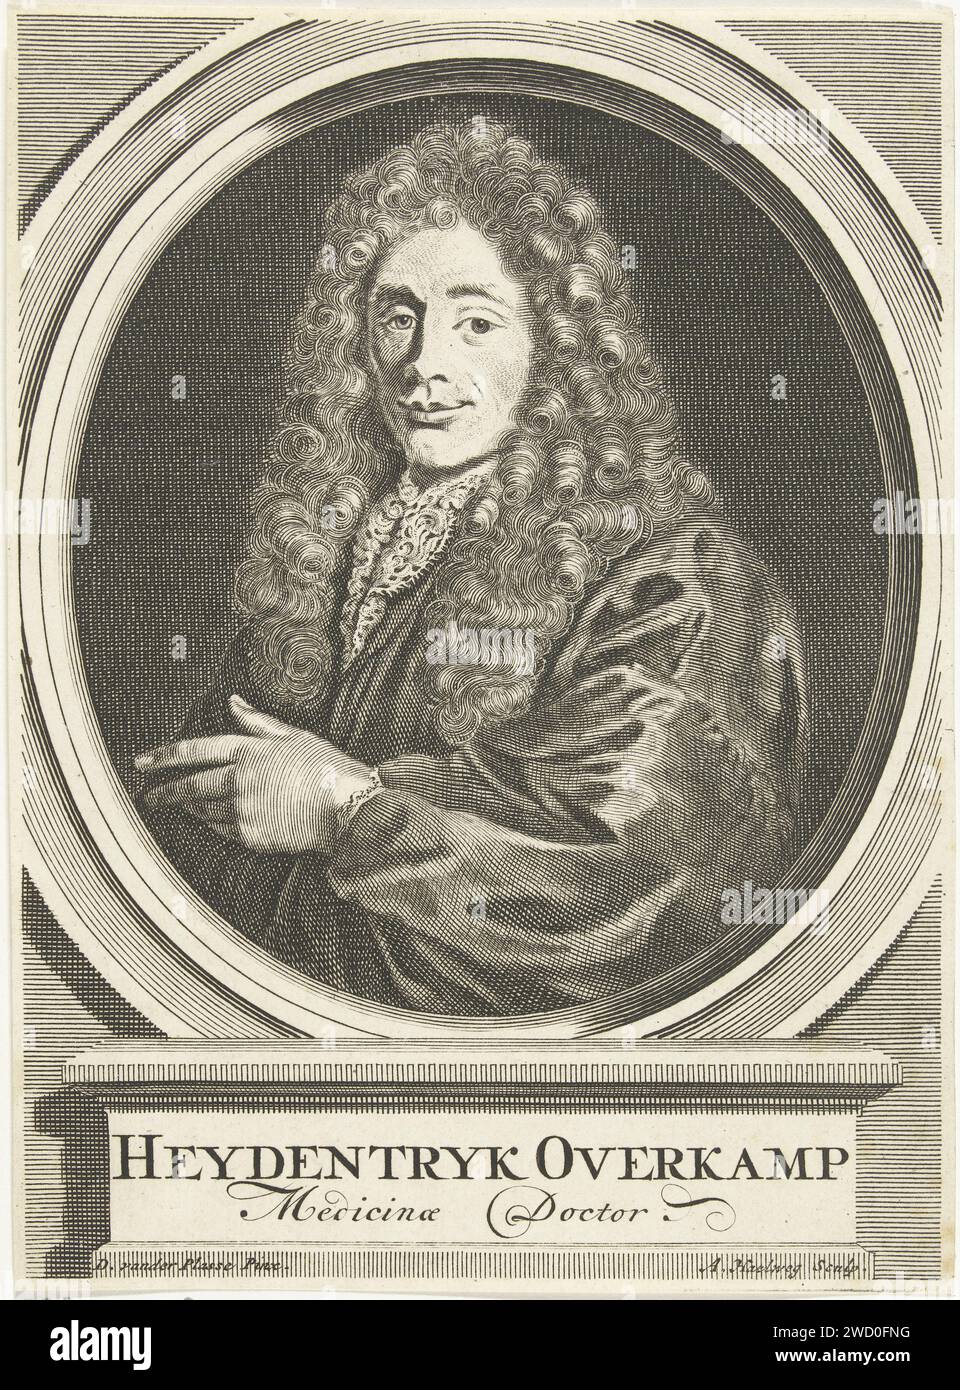 Portrait de Heydentrijk Overkamp, Adriaen Haelwegh, d'après David van der Plas, c. 1667 - c. 1696 impression Nord des pays-Bas gravure sur papier styles de coiffure. dentelle Banque D'Images